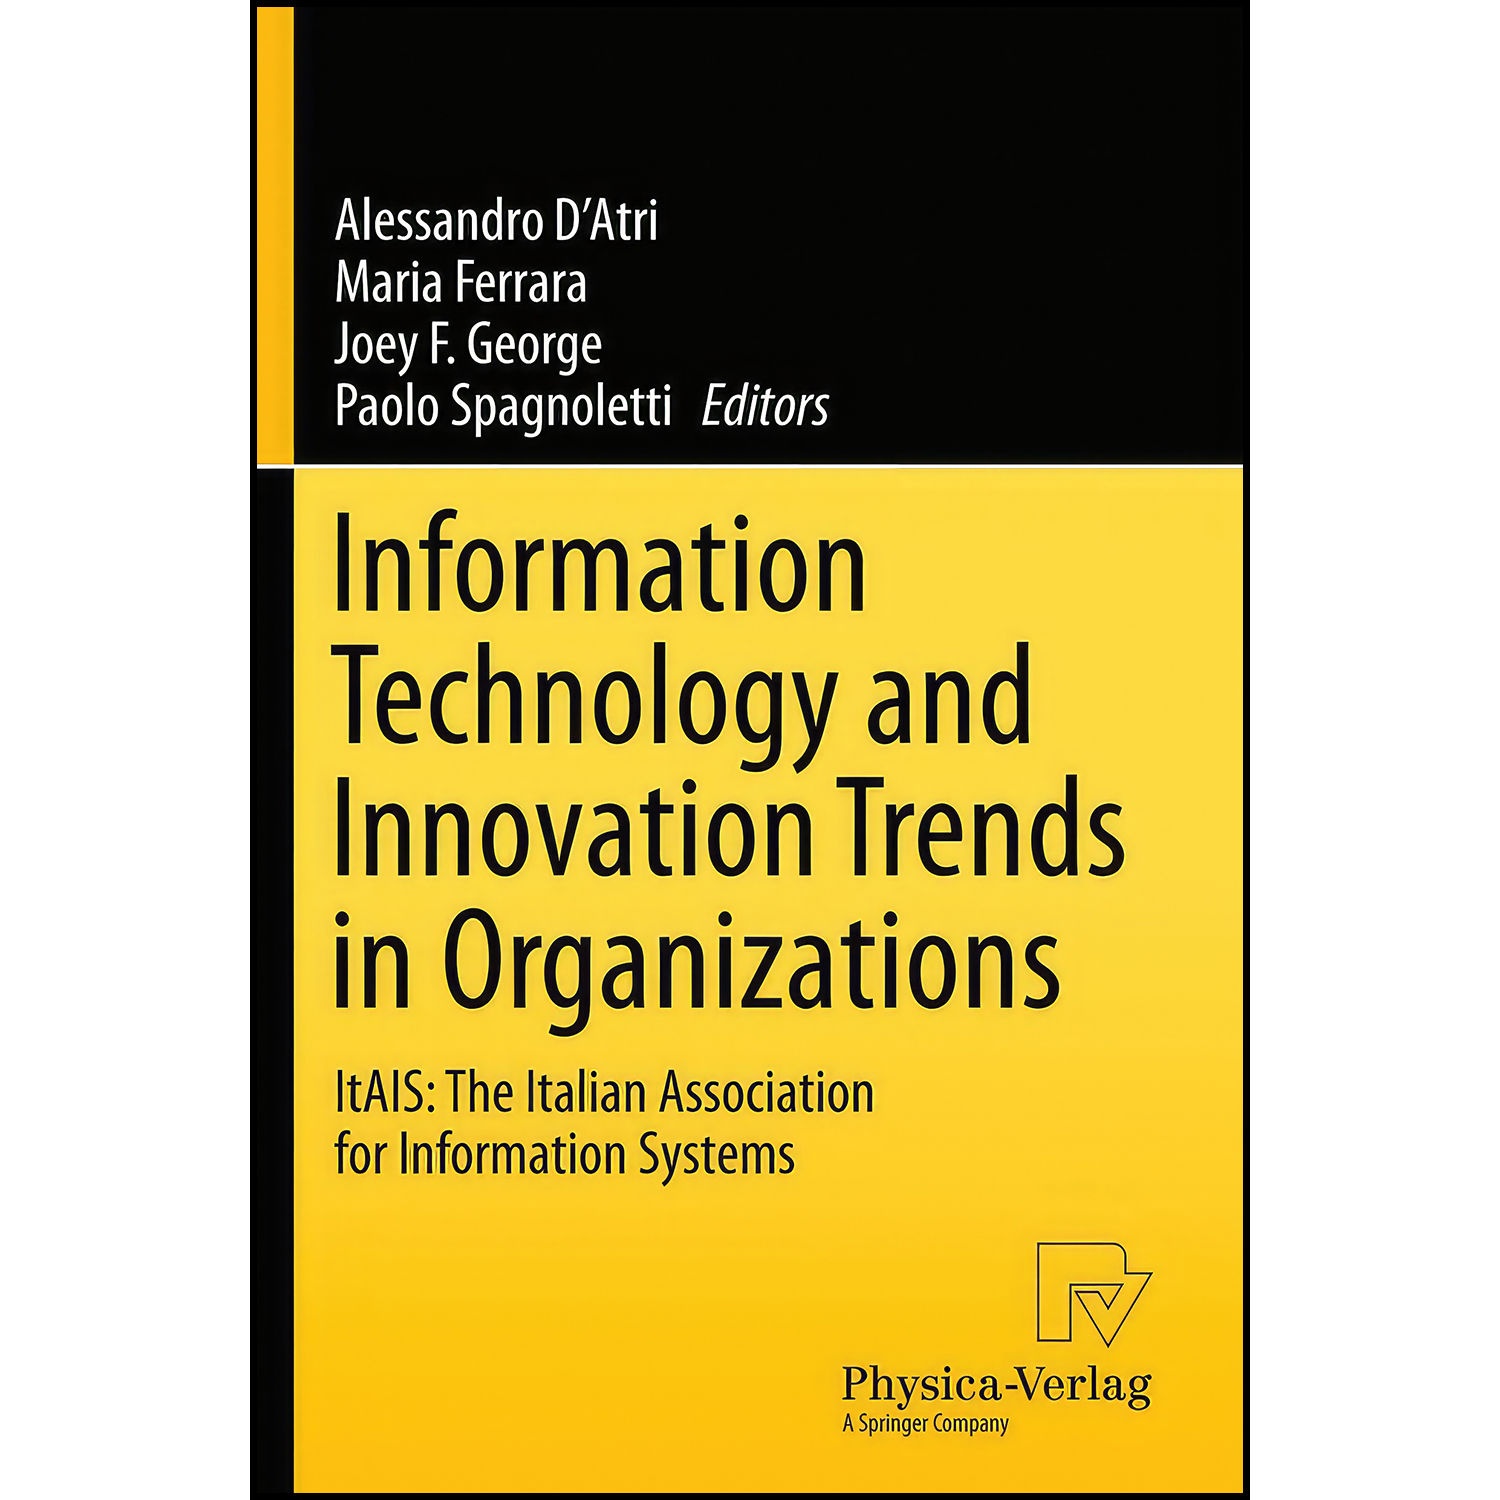 کتاب Information Technology and Innovation Trends in Organizations اثر جمعي از نويسندگان انتشارات Physica